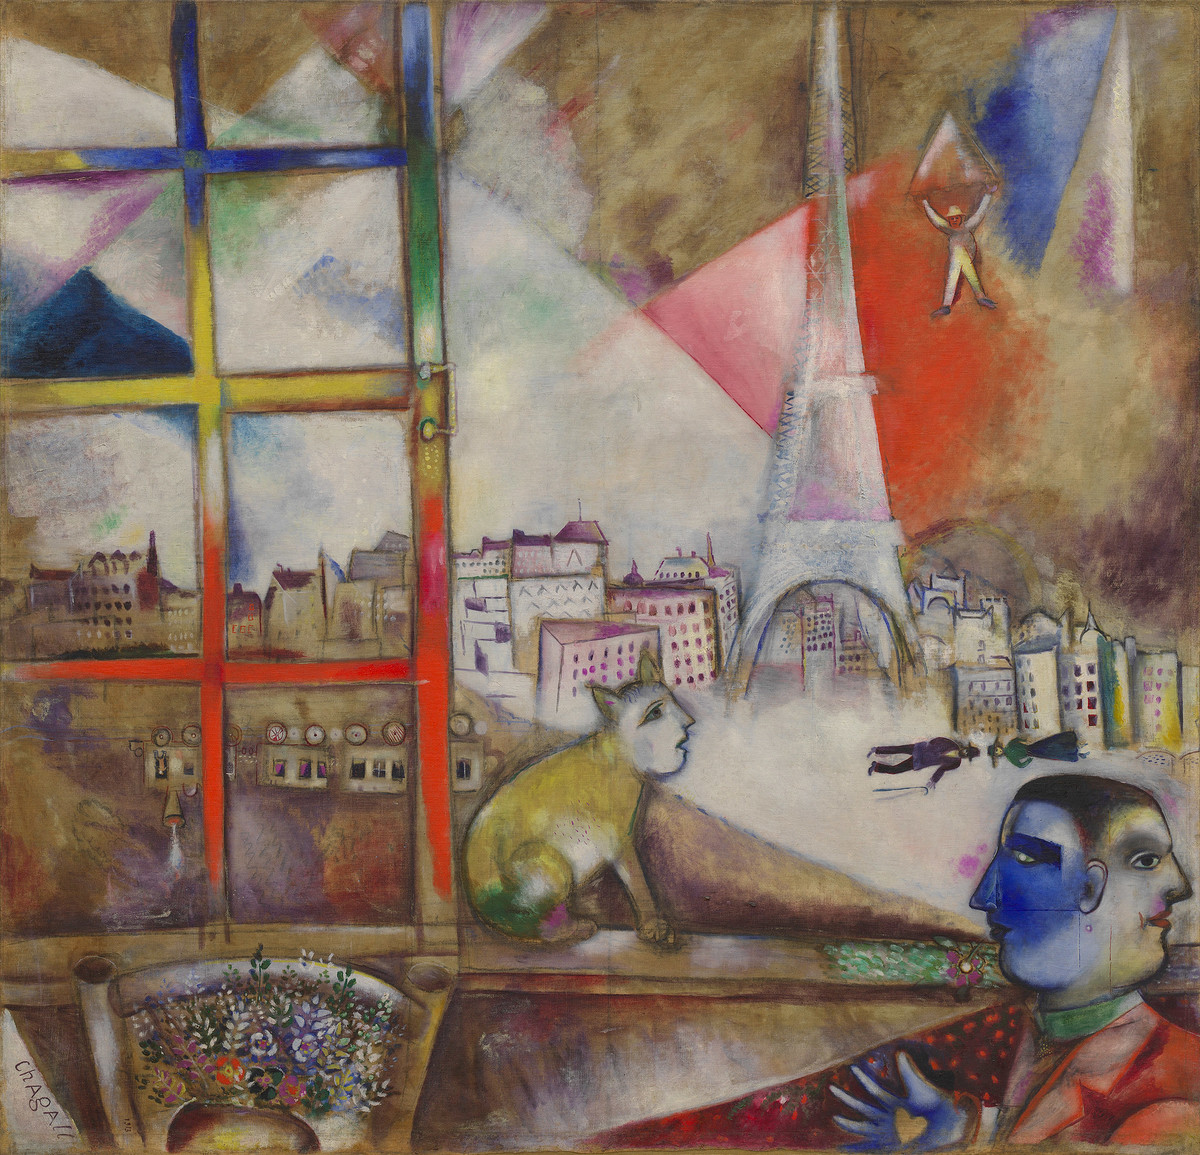 Marc Chagall: Paris durch das Fenster gesehen, 1913, Öl auf Leinwand, 135,8 x 141,4 cm, Solomon R. Guggenheim Museum, New York, © Pro Litteris, Zürich